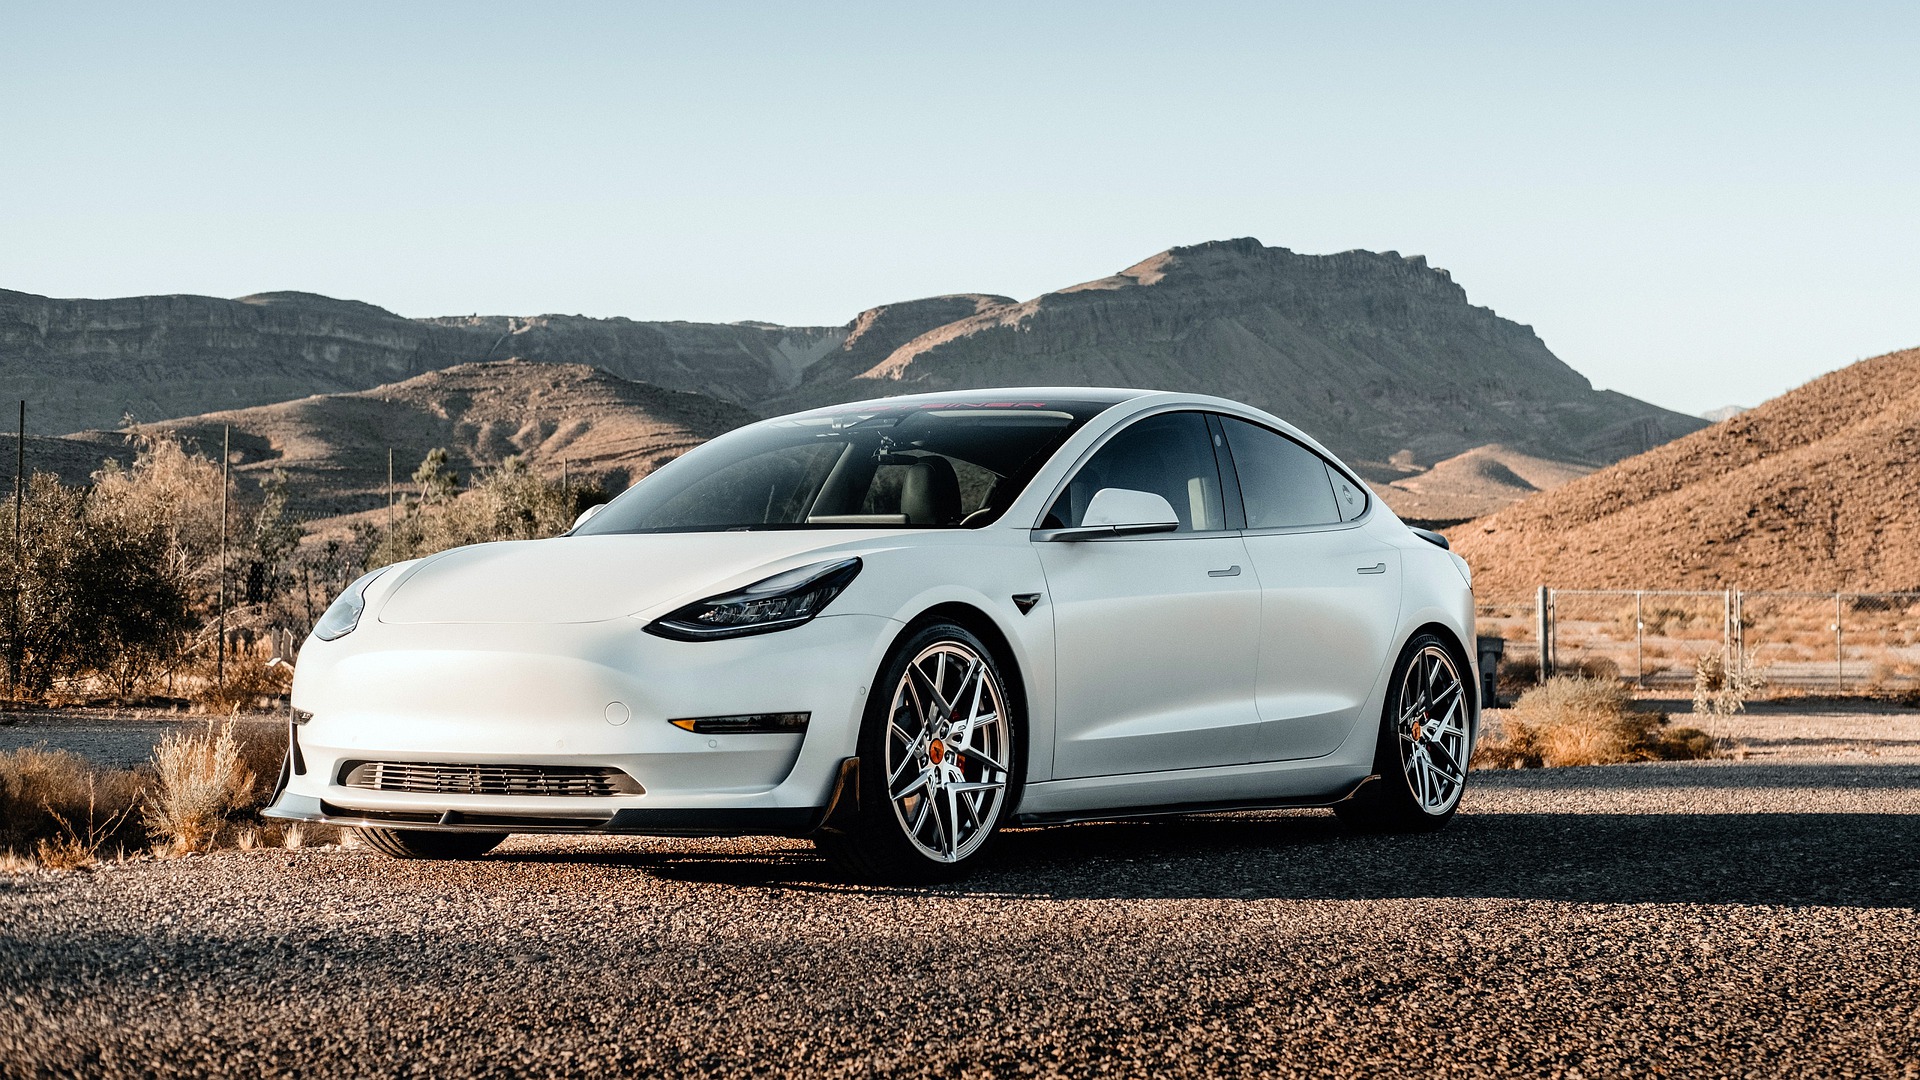 Automobili Tesla, le ultime notizie dal web